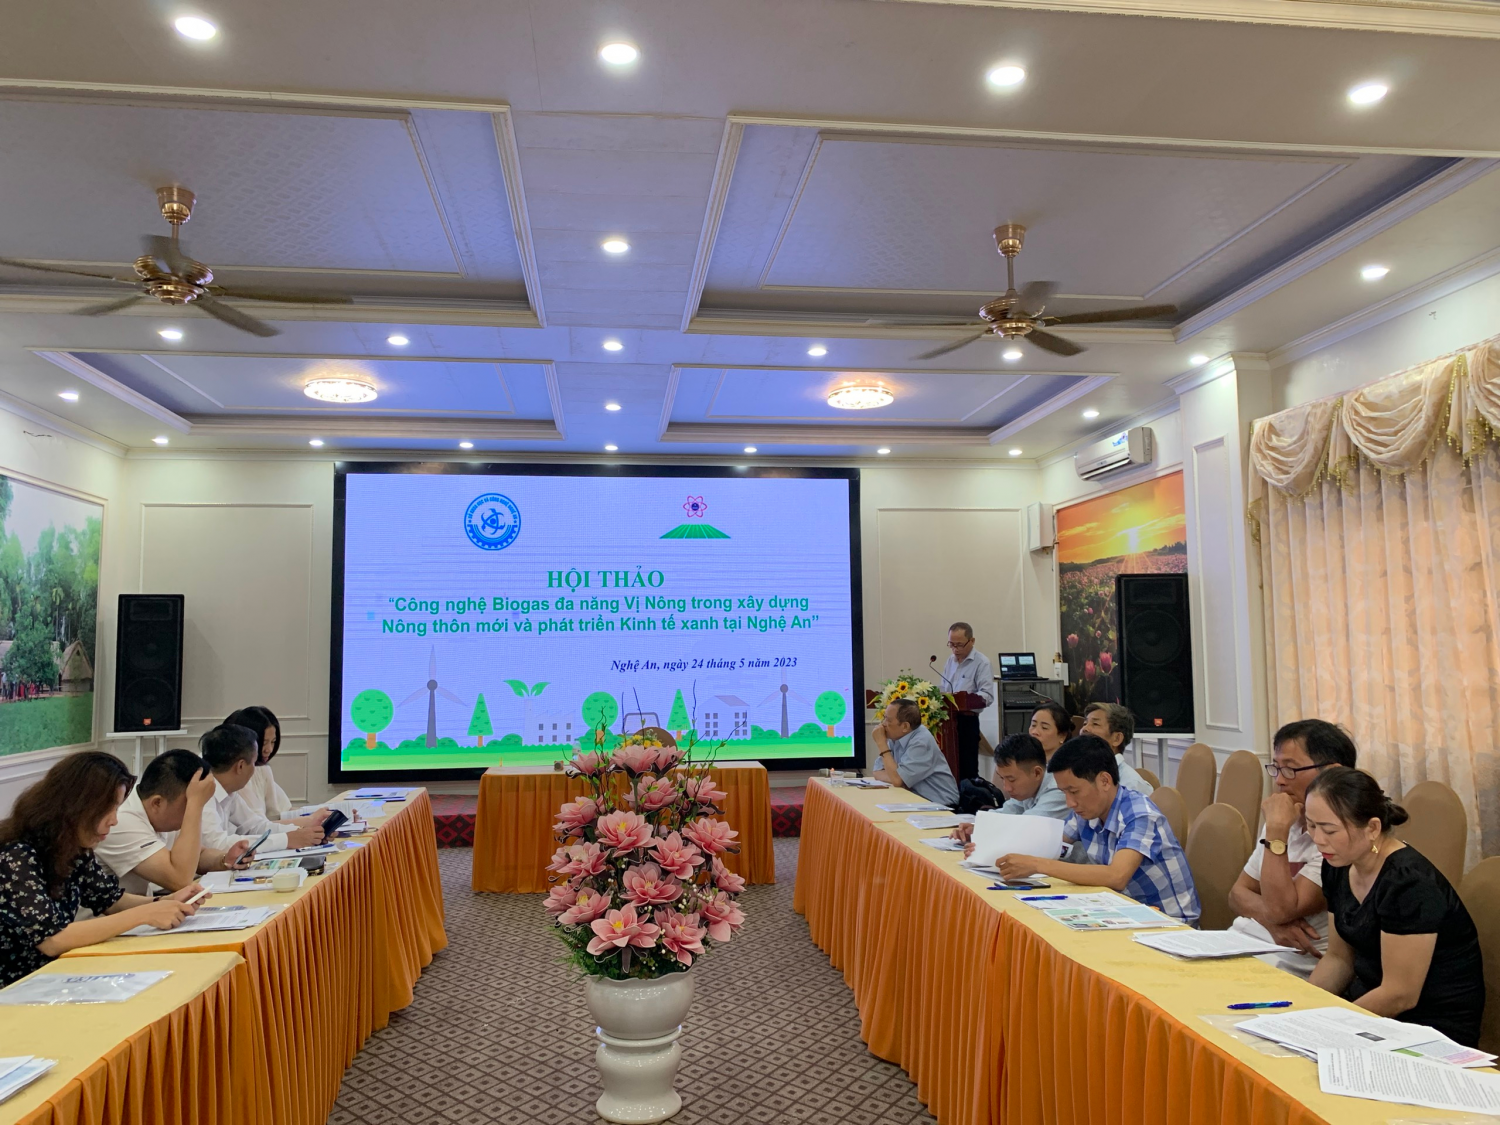 Hội thảo “Công nghệ Biogas đa năng Vị Nông trong xây dựng nông thôn mới và phát triển kinh tế xanh tại Nghệ An”.